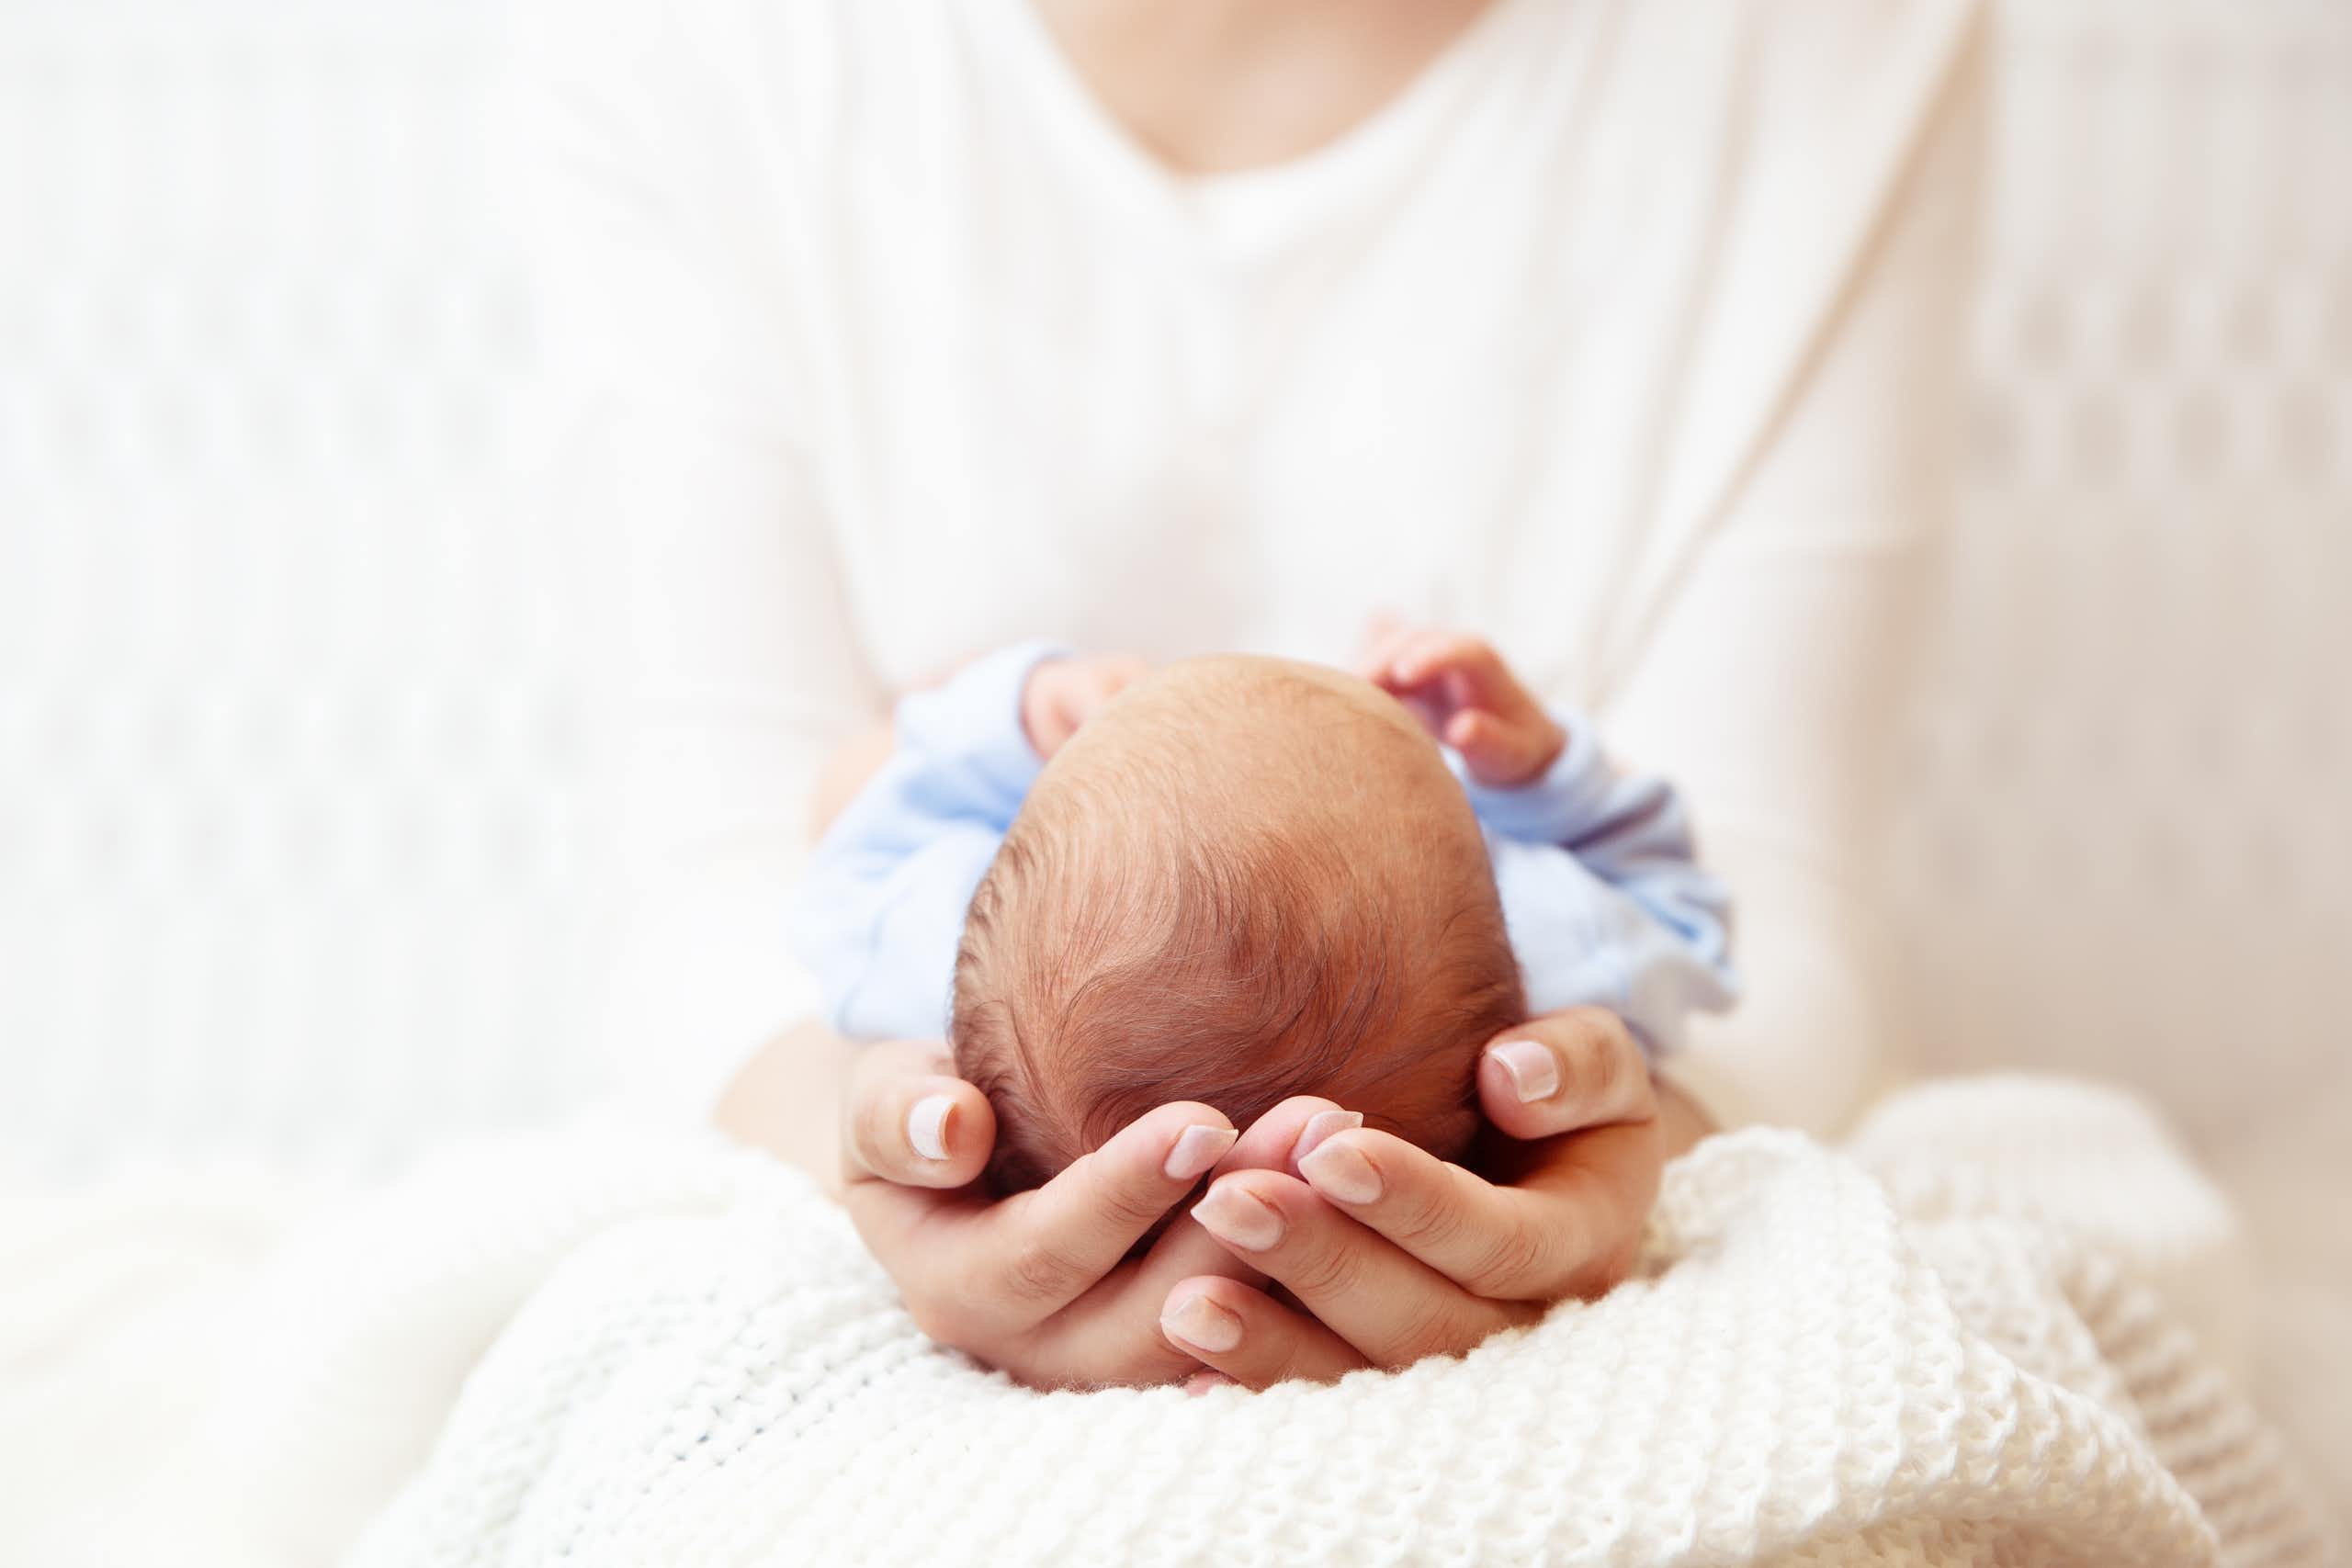 Une femme tient entre ses mains un nouveau-né dont on ne voit que le haut de la tête.